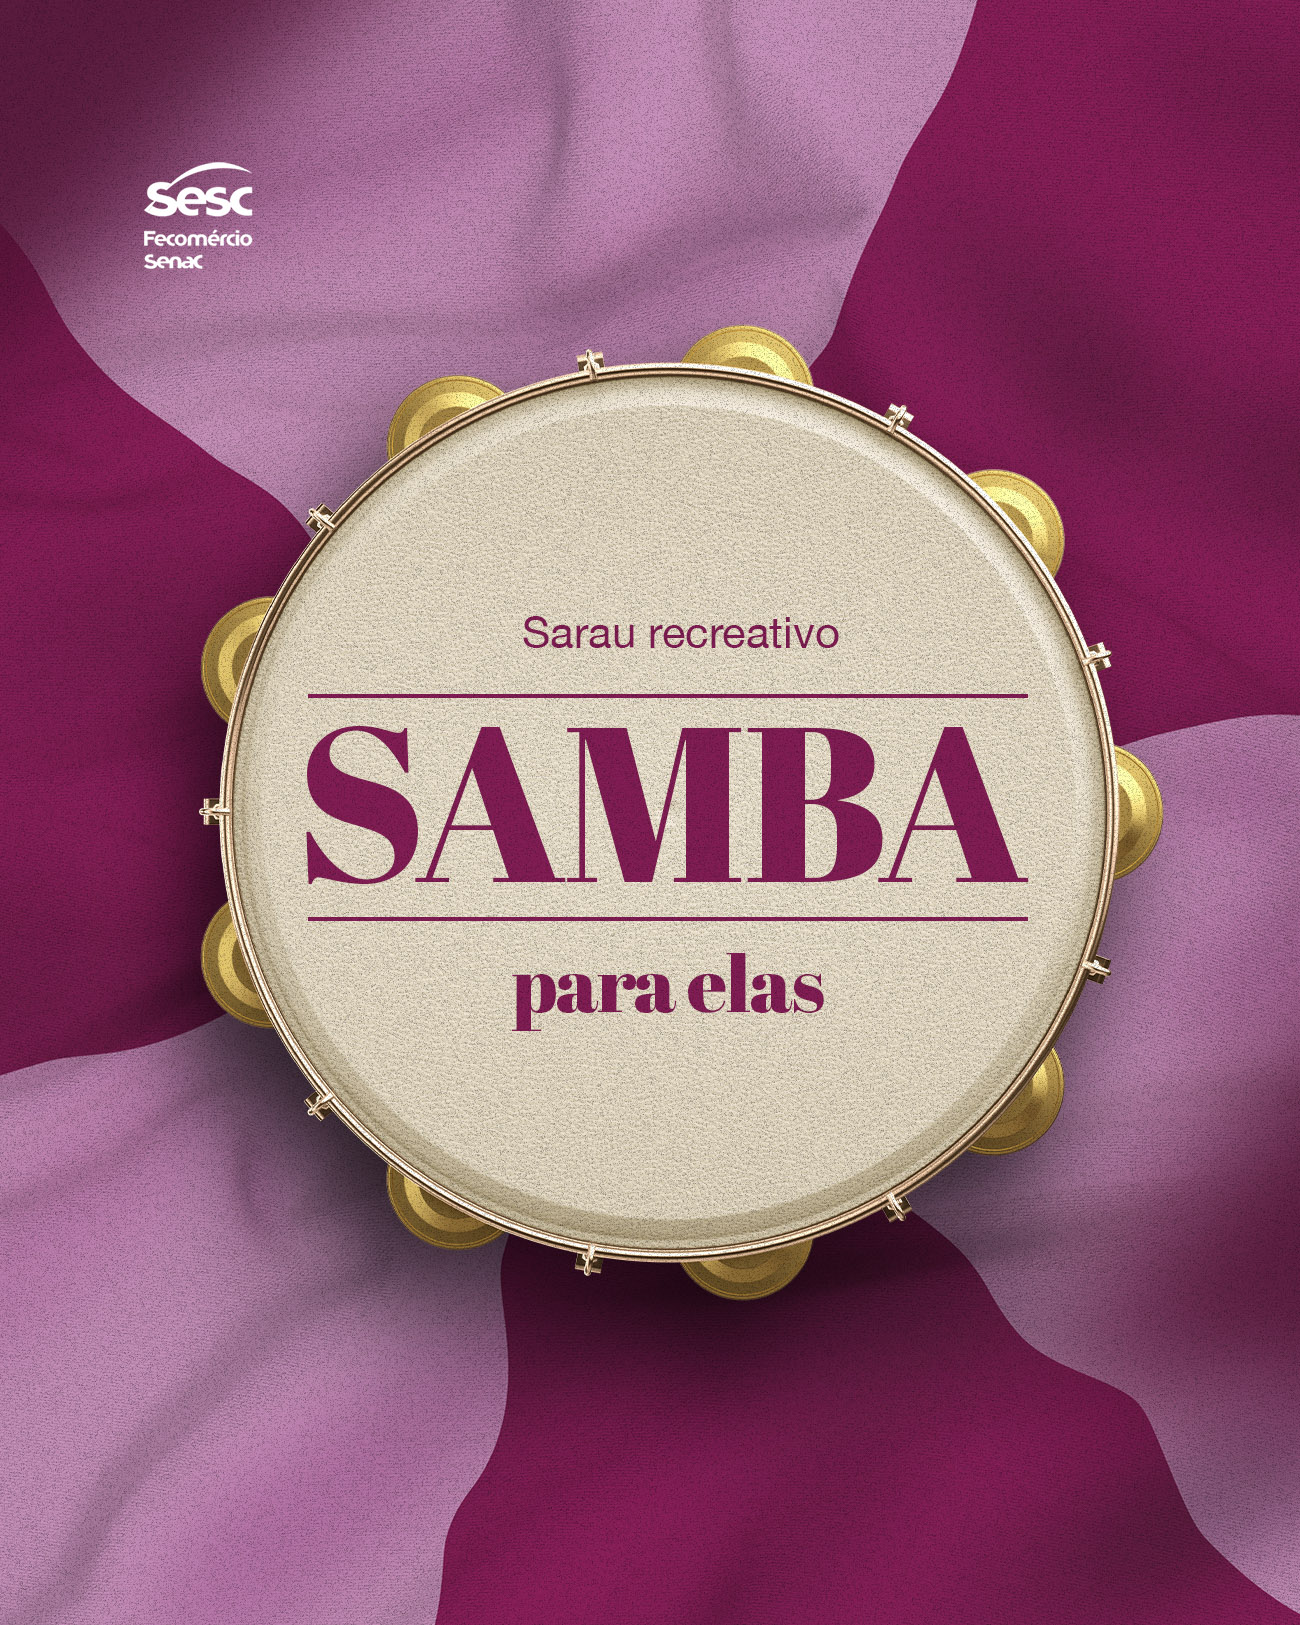 Samba para ela homenageará mulheres em sarau promovido pelo Sesc